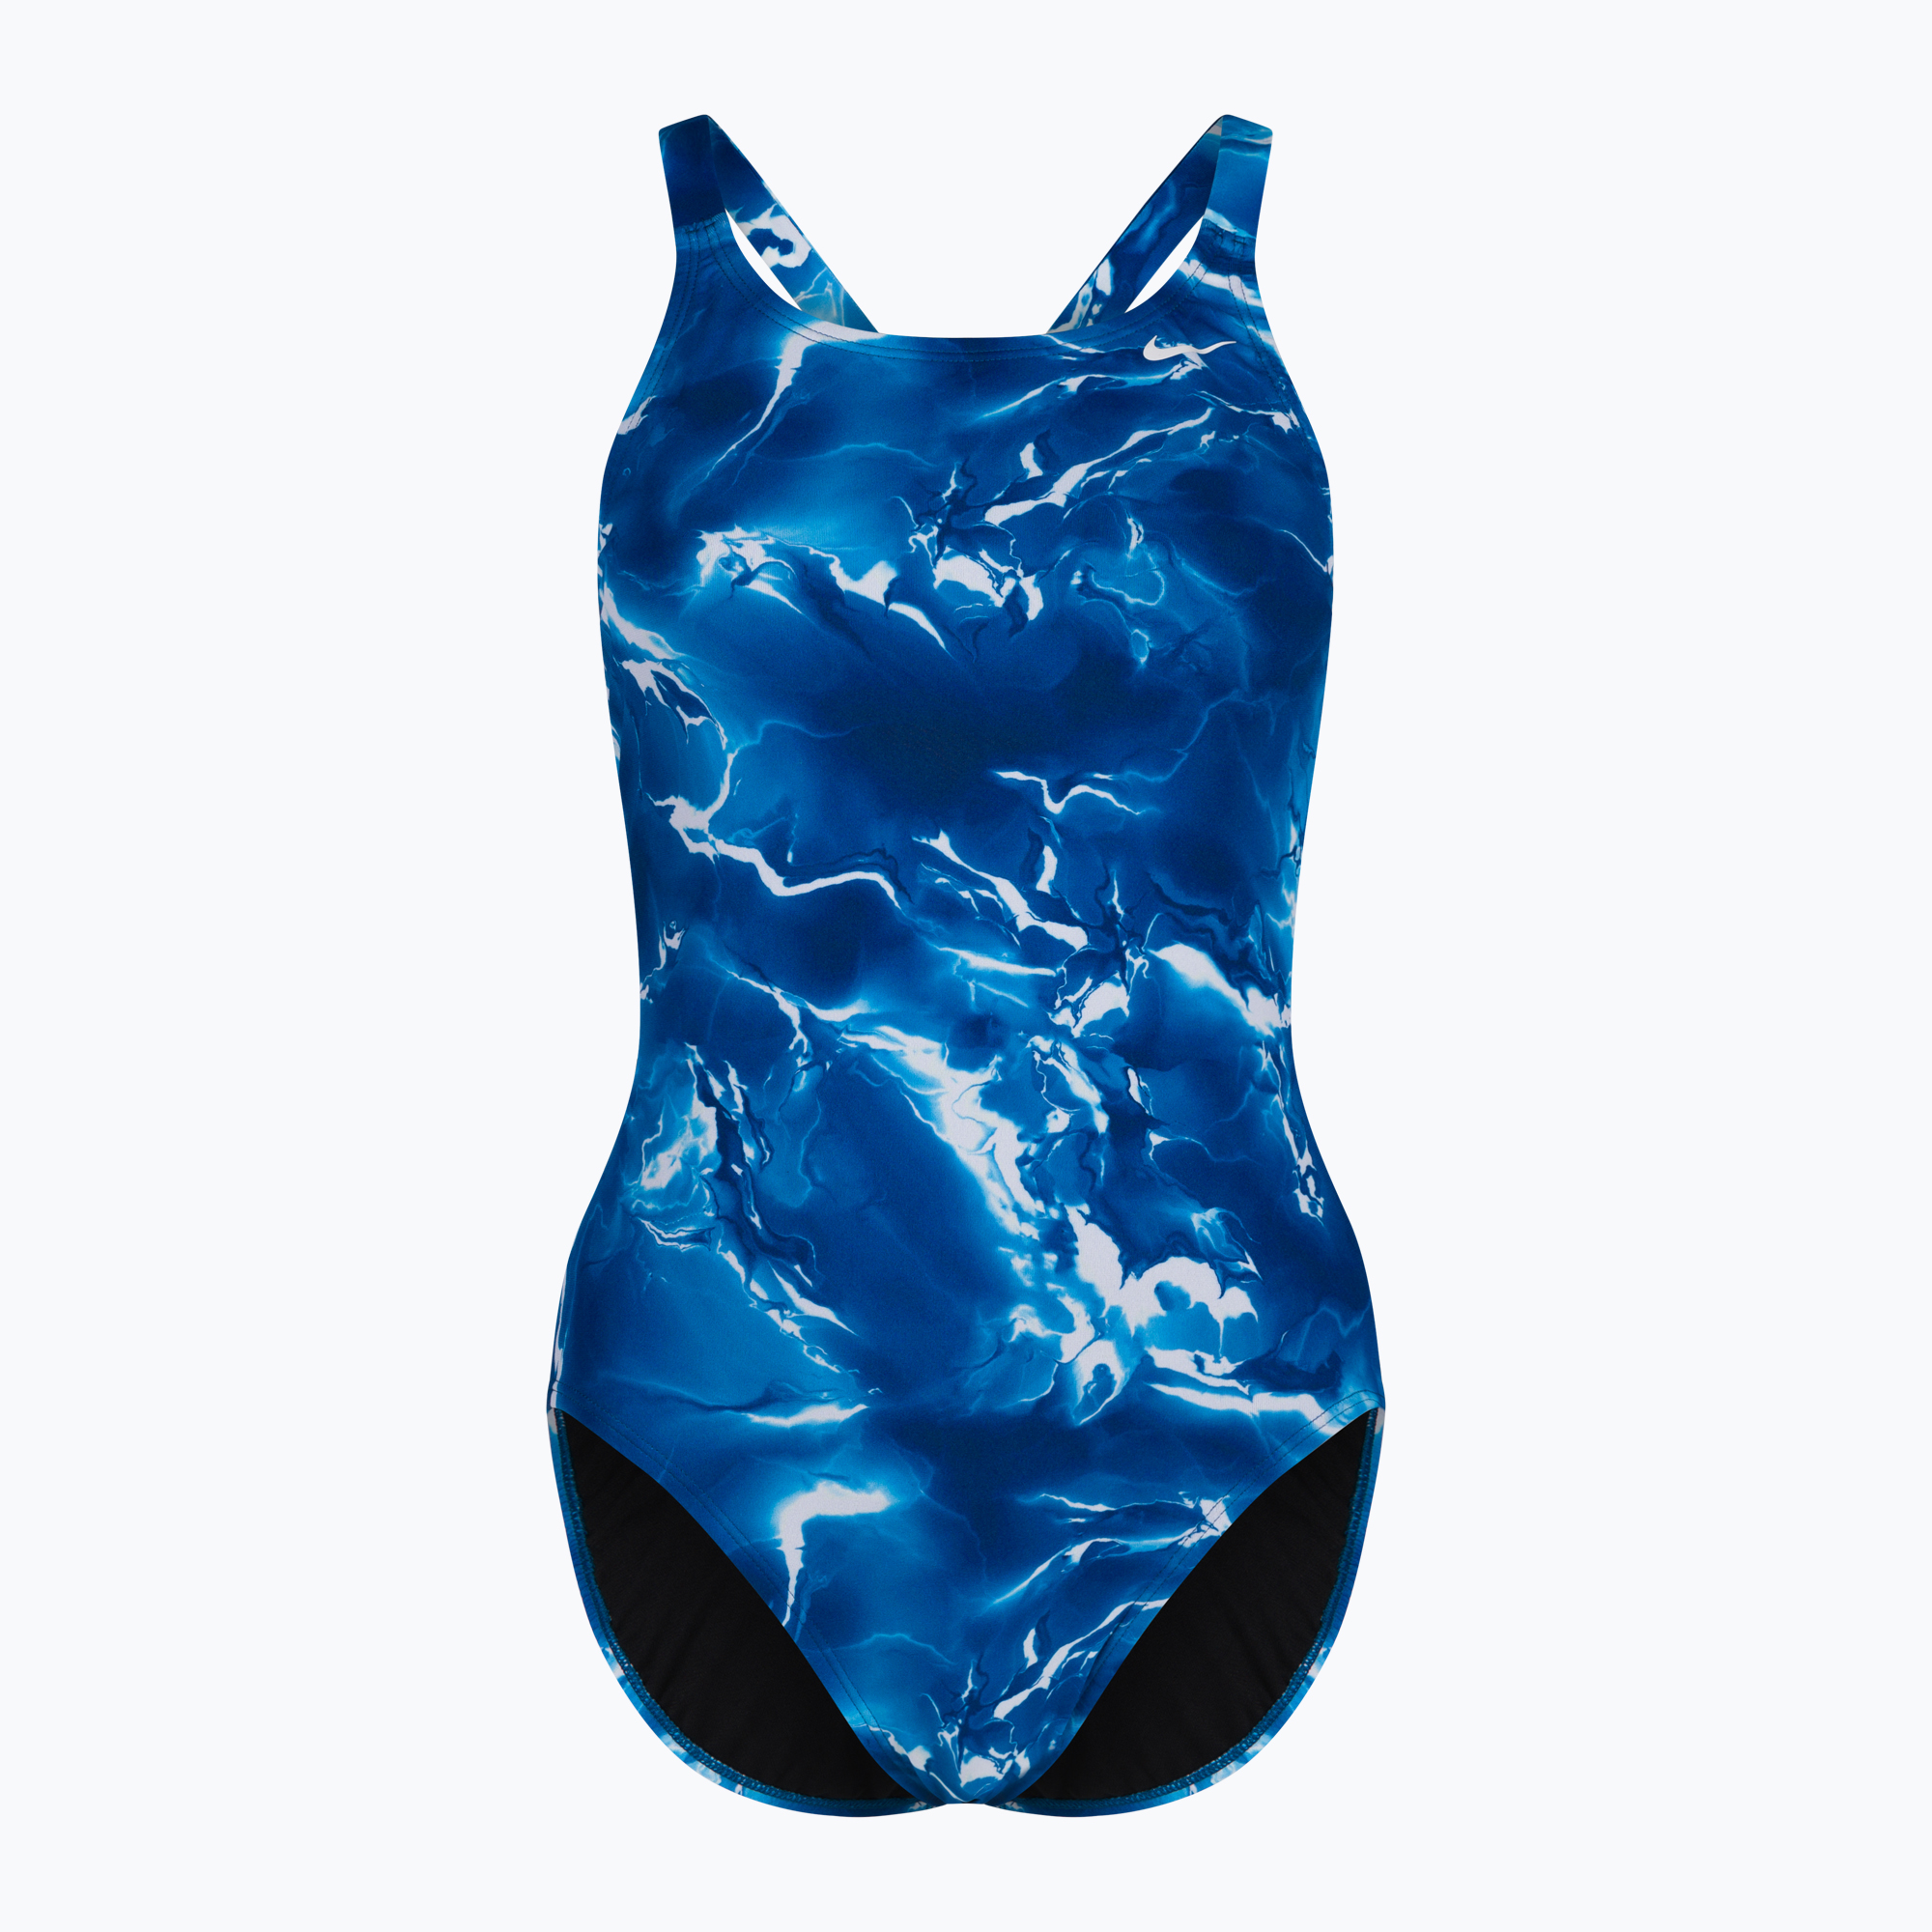 Дамски бански костюм от една част NIKE LIGHTNING blue NESSA024